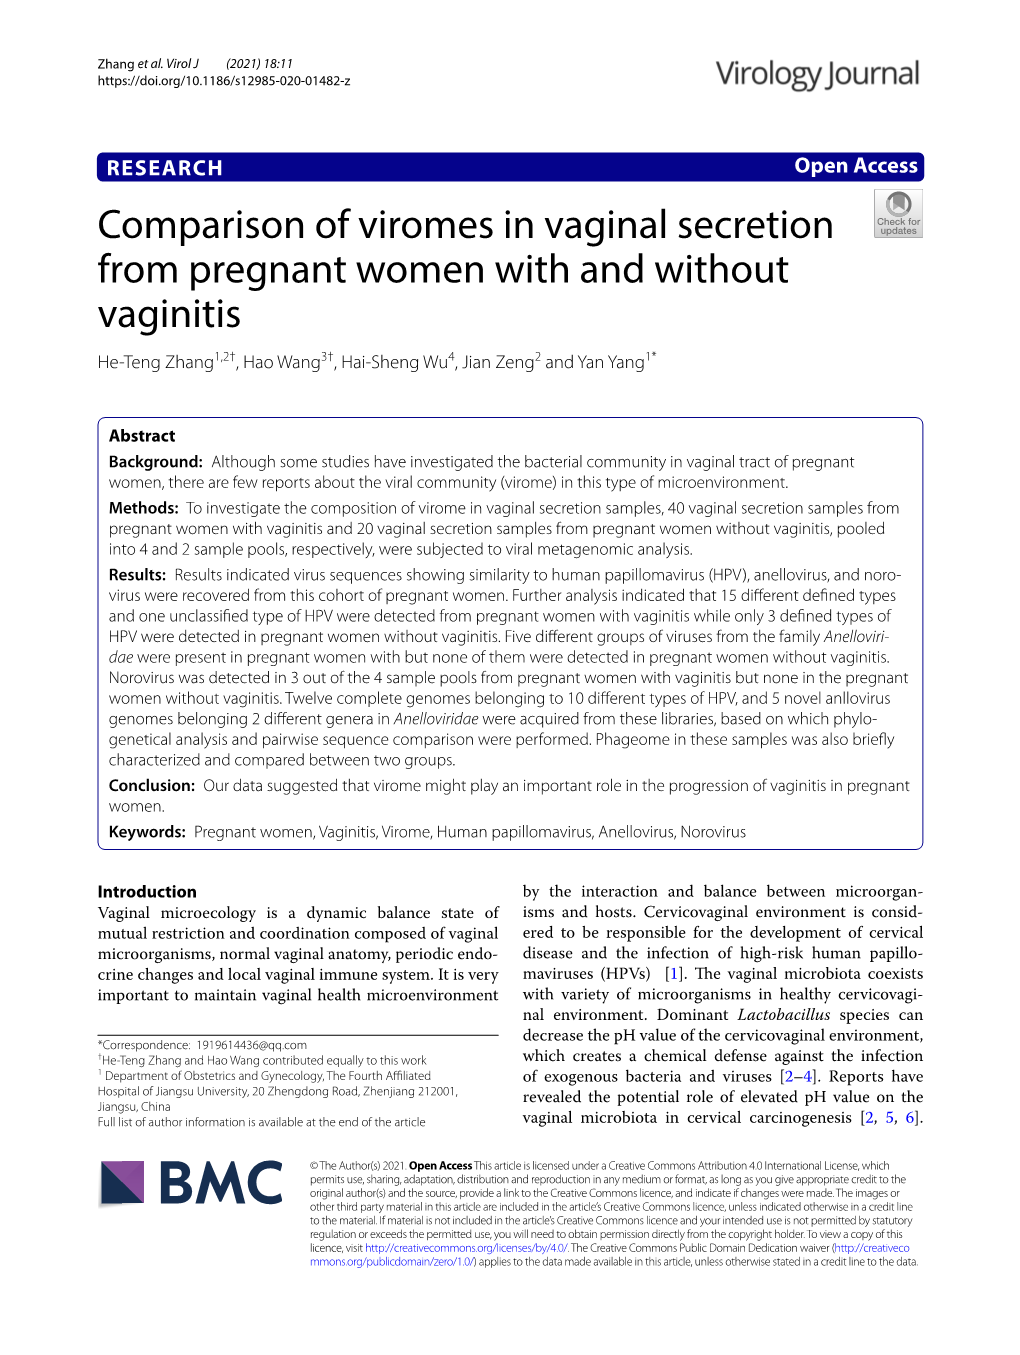 Comparison of Viromes in Vaginal Secretion from Pregnant Women with and Without Vaginitis He‑Teng Zhang1,2†, Hao Wang3†, Hai‑Sheng Wu4, Jian Zeng2 and Yan Yang1*